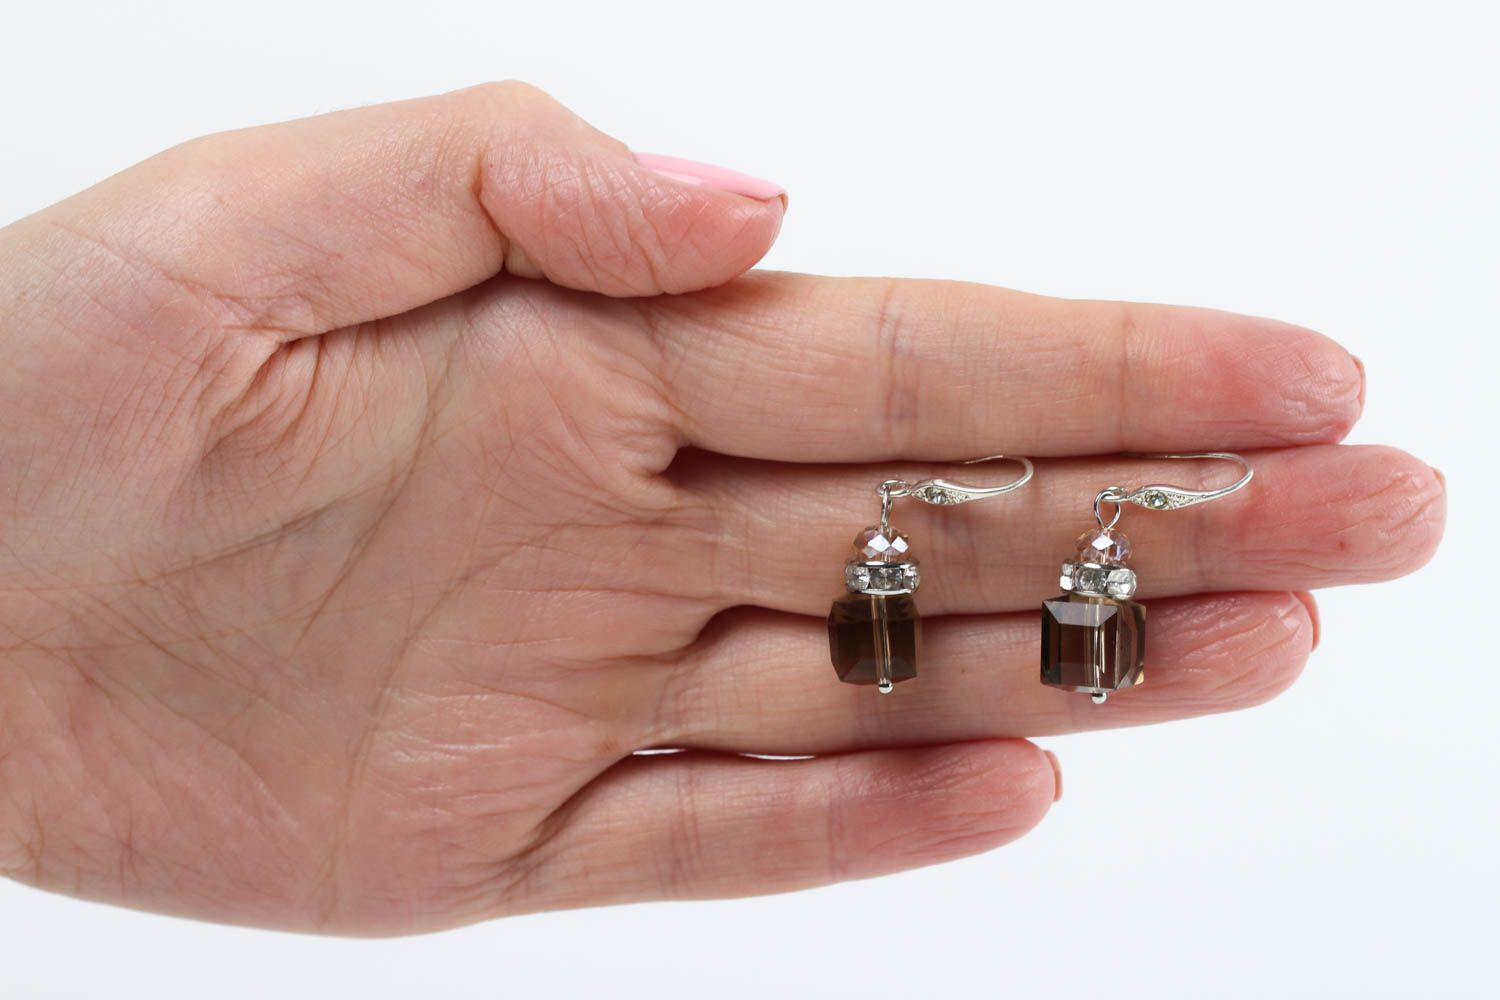 Handmade earrings designer earrings unusual gift crystal earrings gift for her photo 5